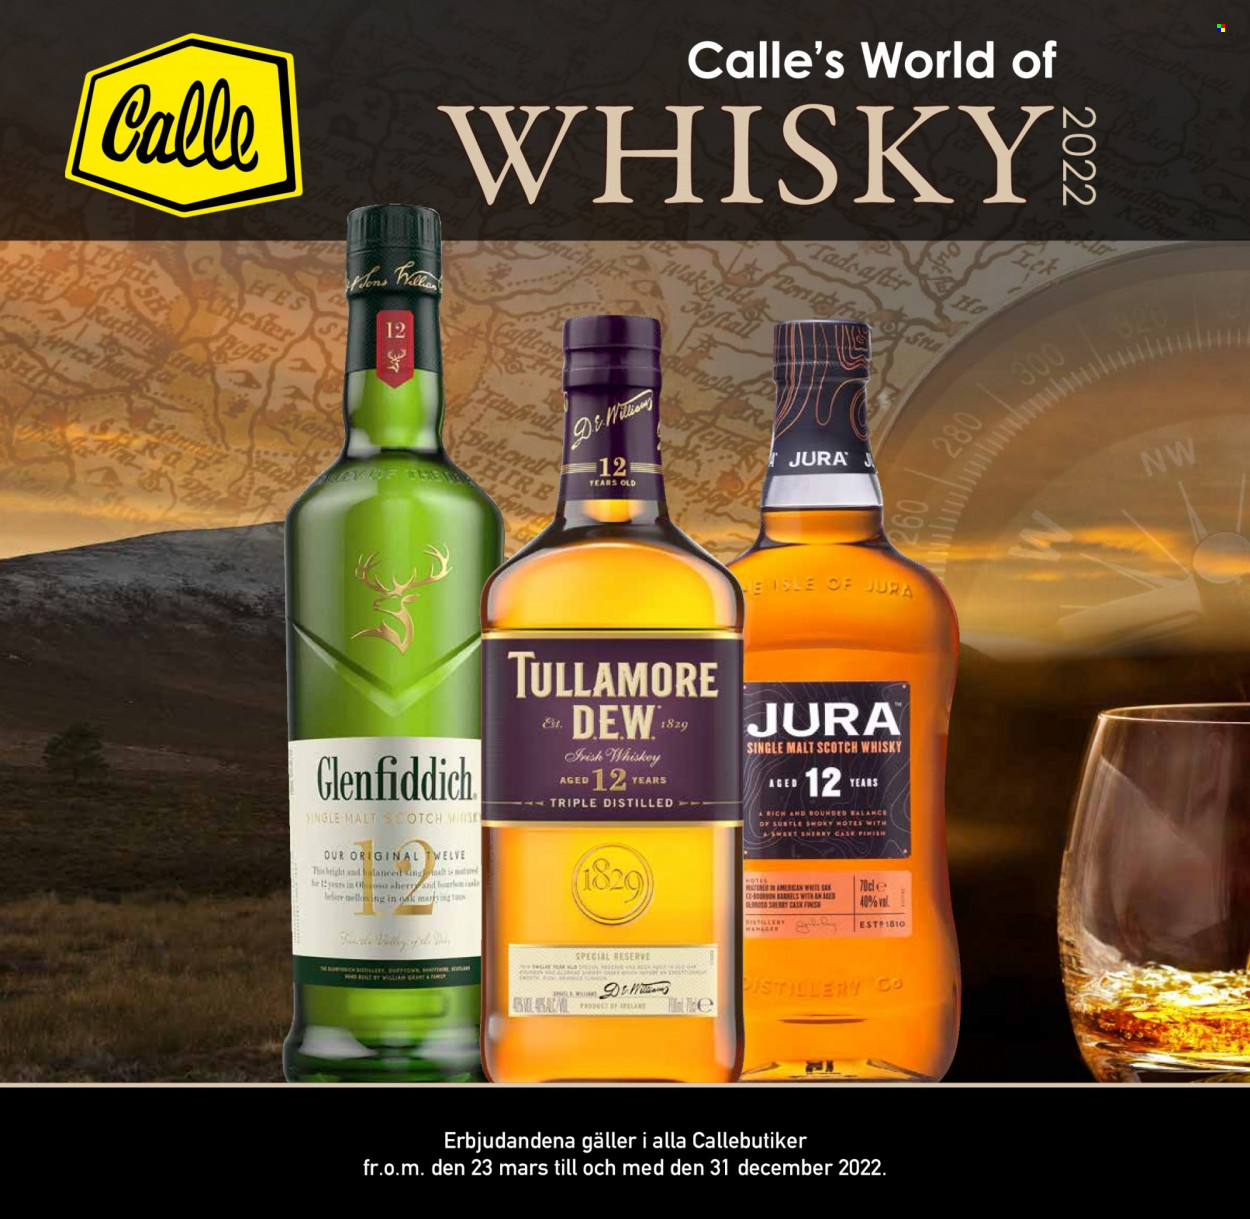 Calle reklamblad - 23/3 2022 - 31/12 2022 - varor från reklamblad - whisky, scotch whisky, Tullamore Dew, Glenfiddich, Irish Whiskey. Sida 1.